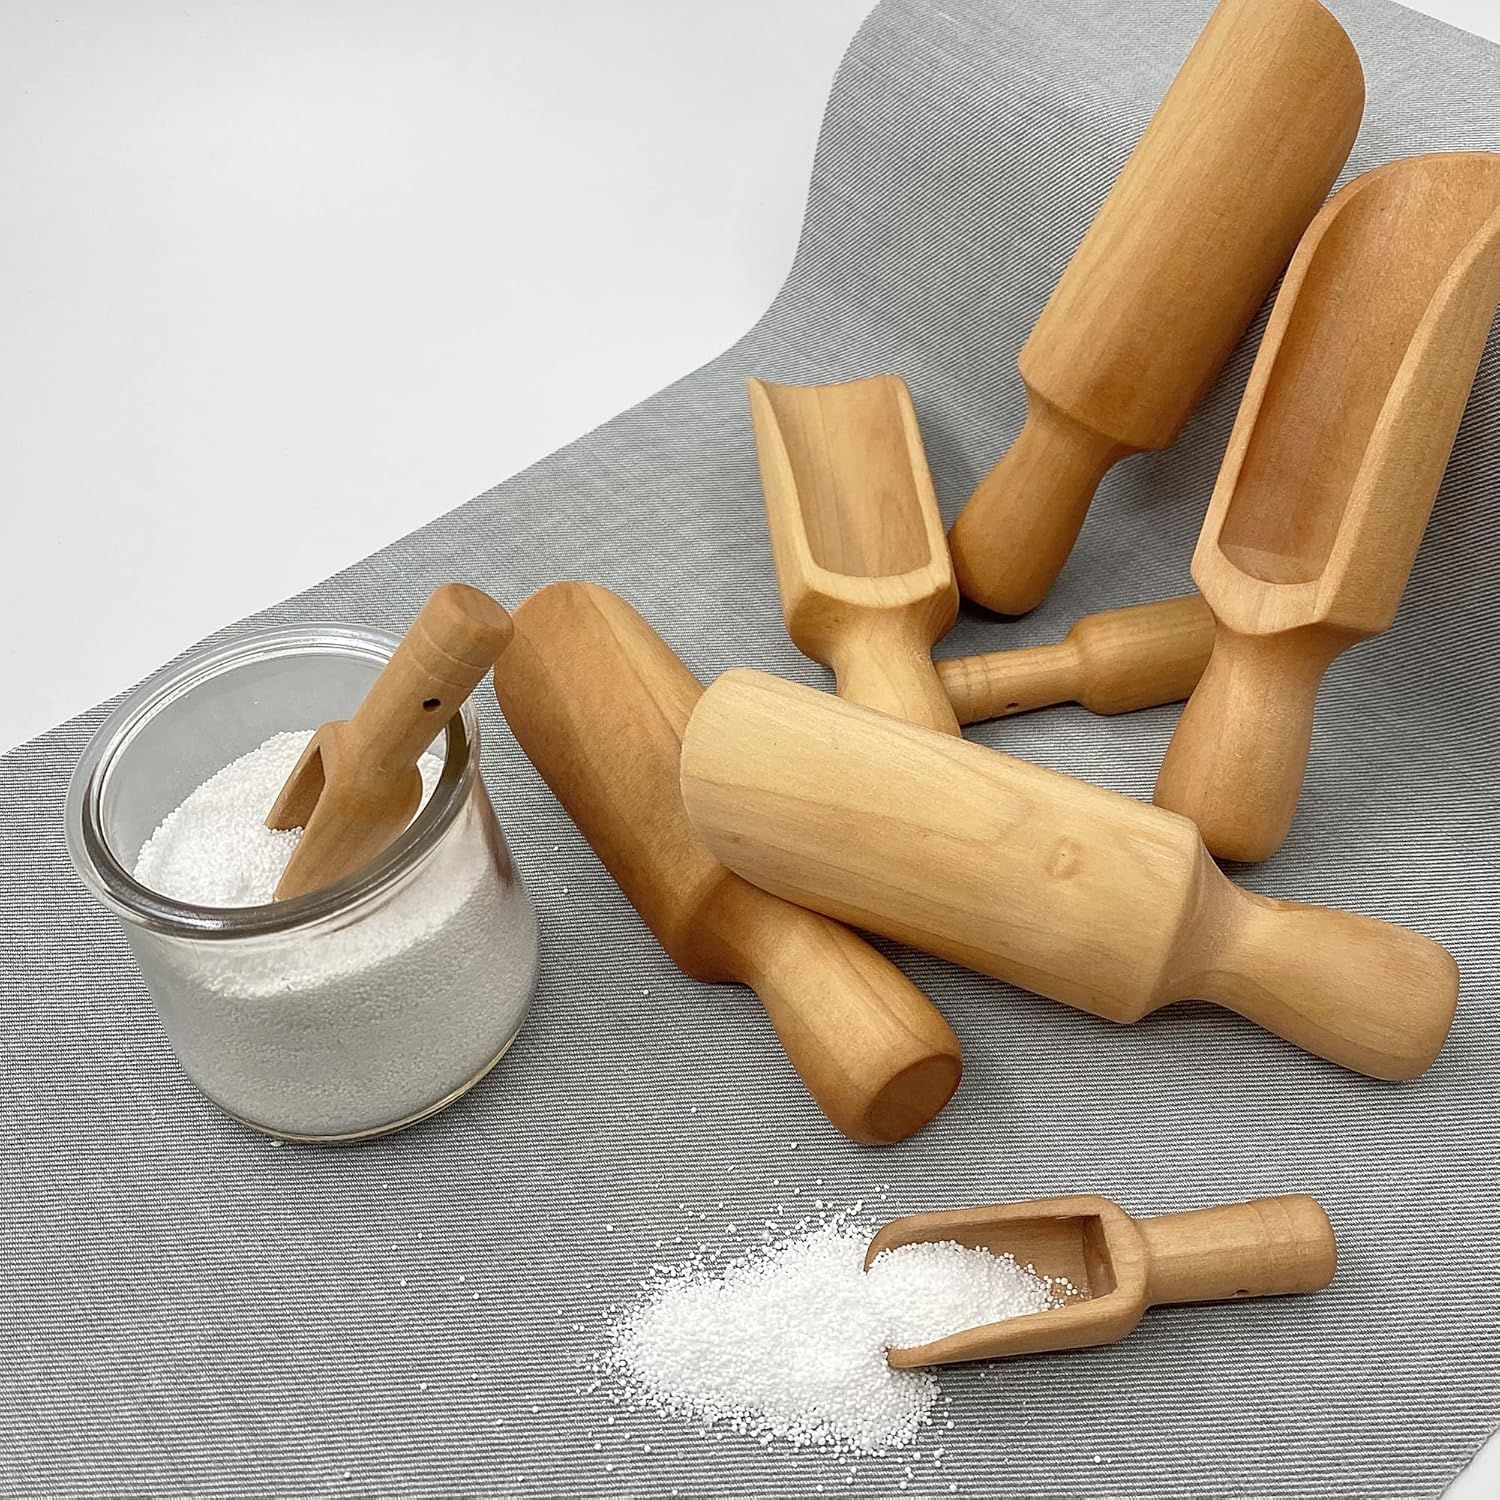 Wooden Scoop(5.5"+3") bath salt scoop Natural Beech Wood Scoop for Flour, Bath Salt, Sugar, Cerea... | Amazon (US)